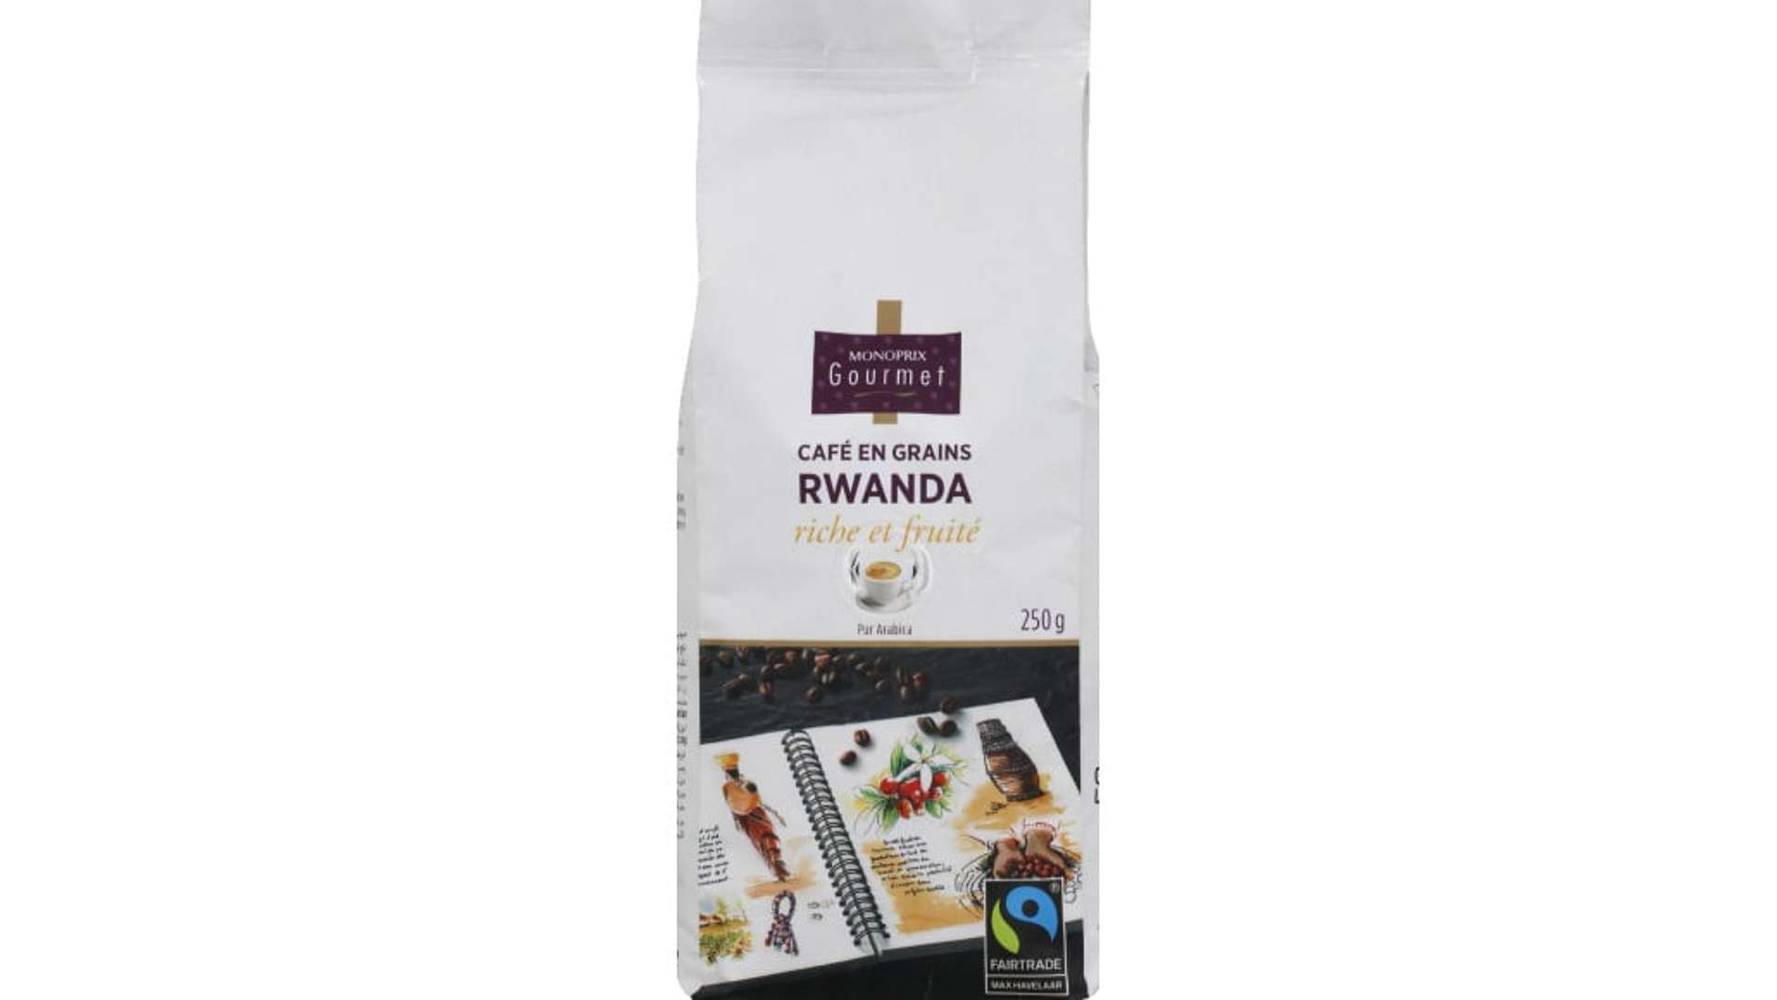 Monoprix Gourmet Café en grains du Rwanda, riche et fruité, pur Arabica Le paquet de 250g